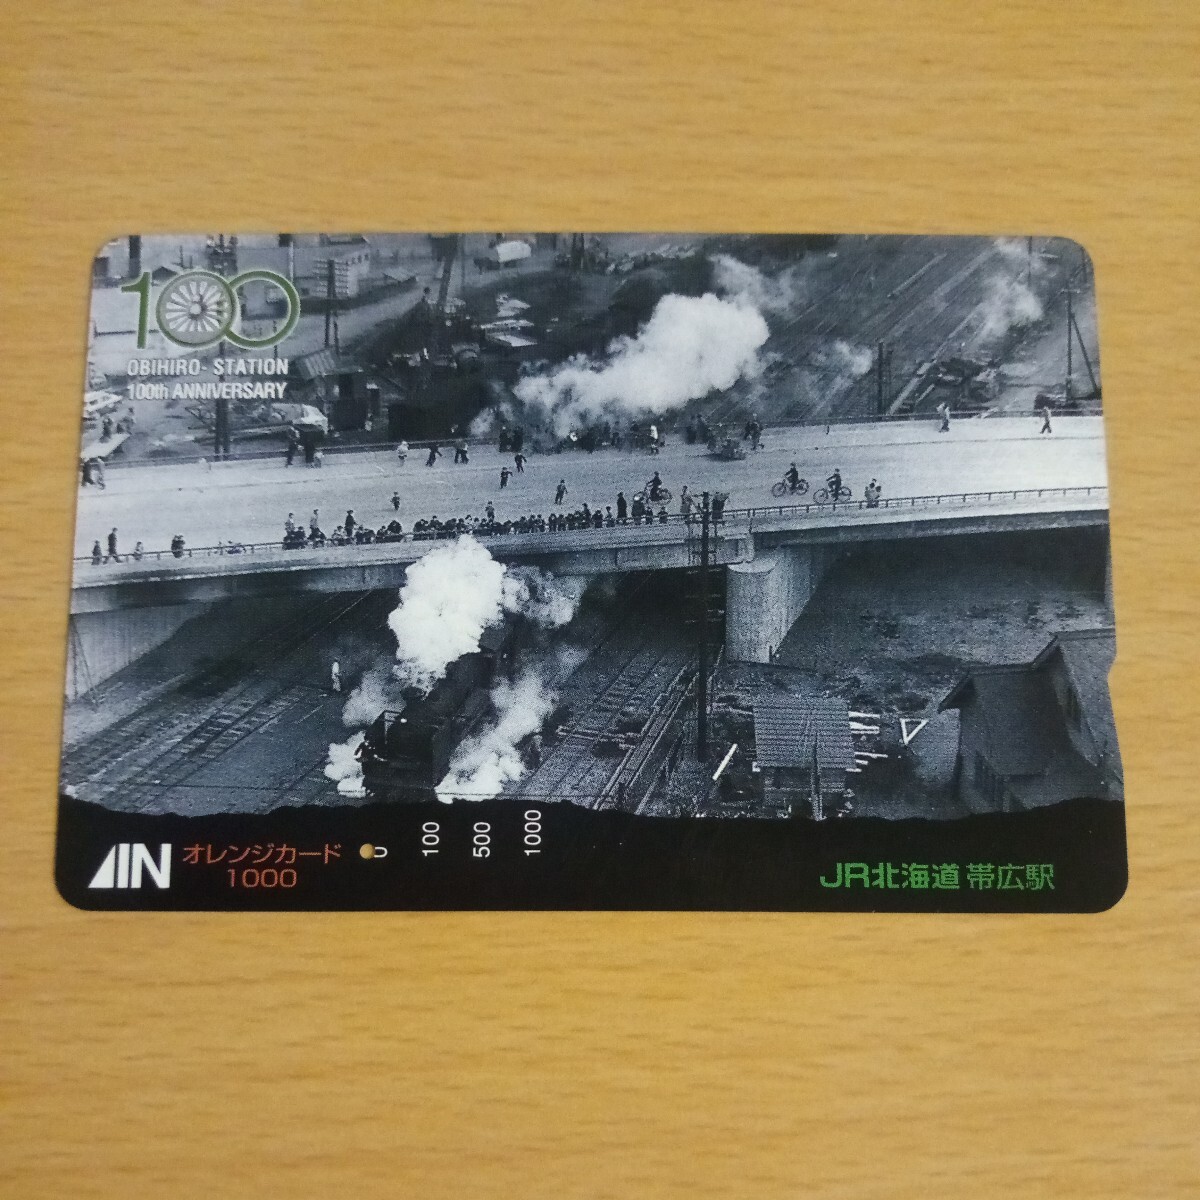 【1穴】使用済みオレンジカード JR北海道 帯広駅100周年記念 0507の画像1